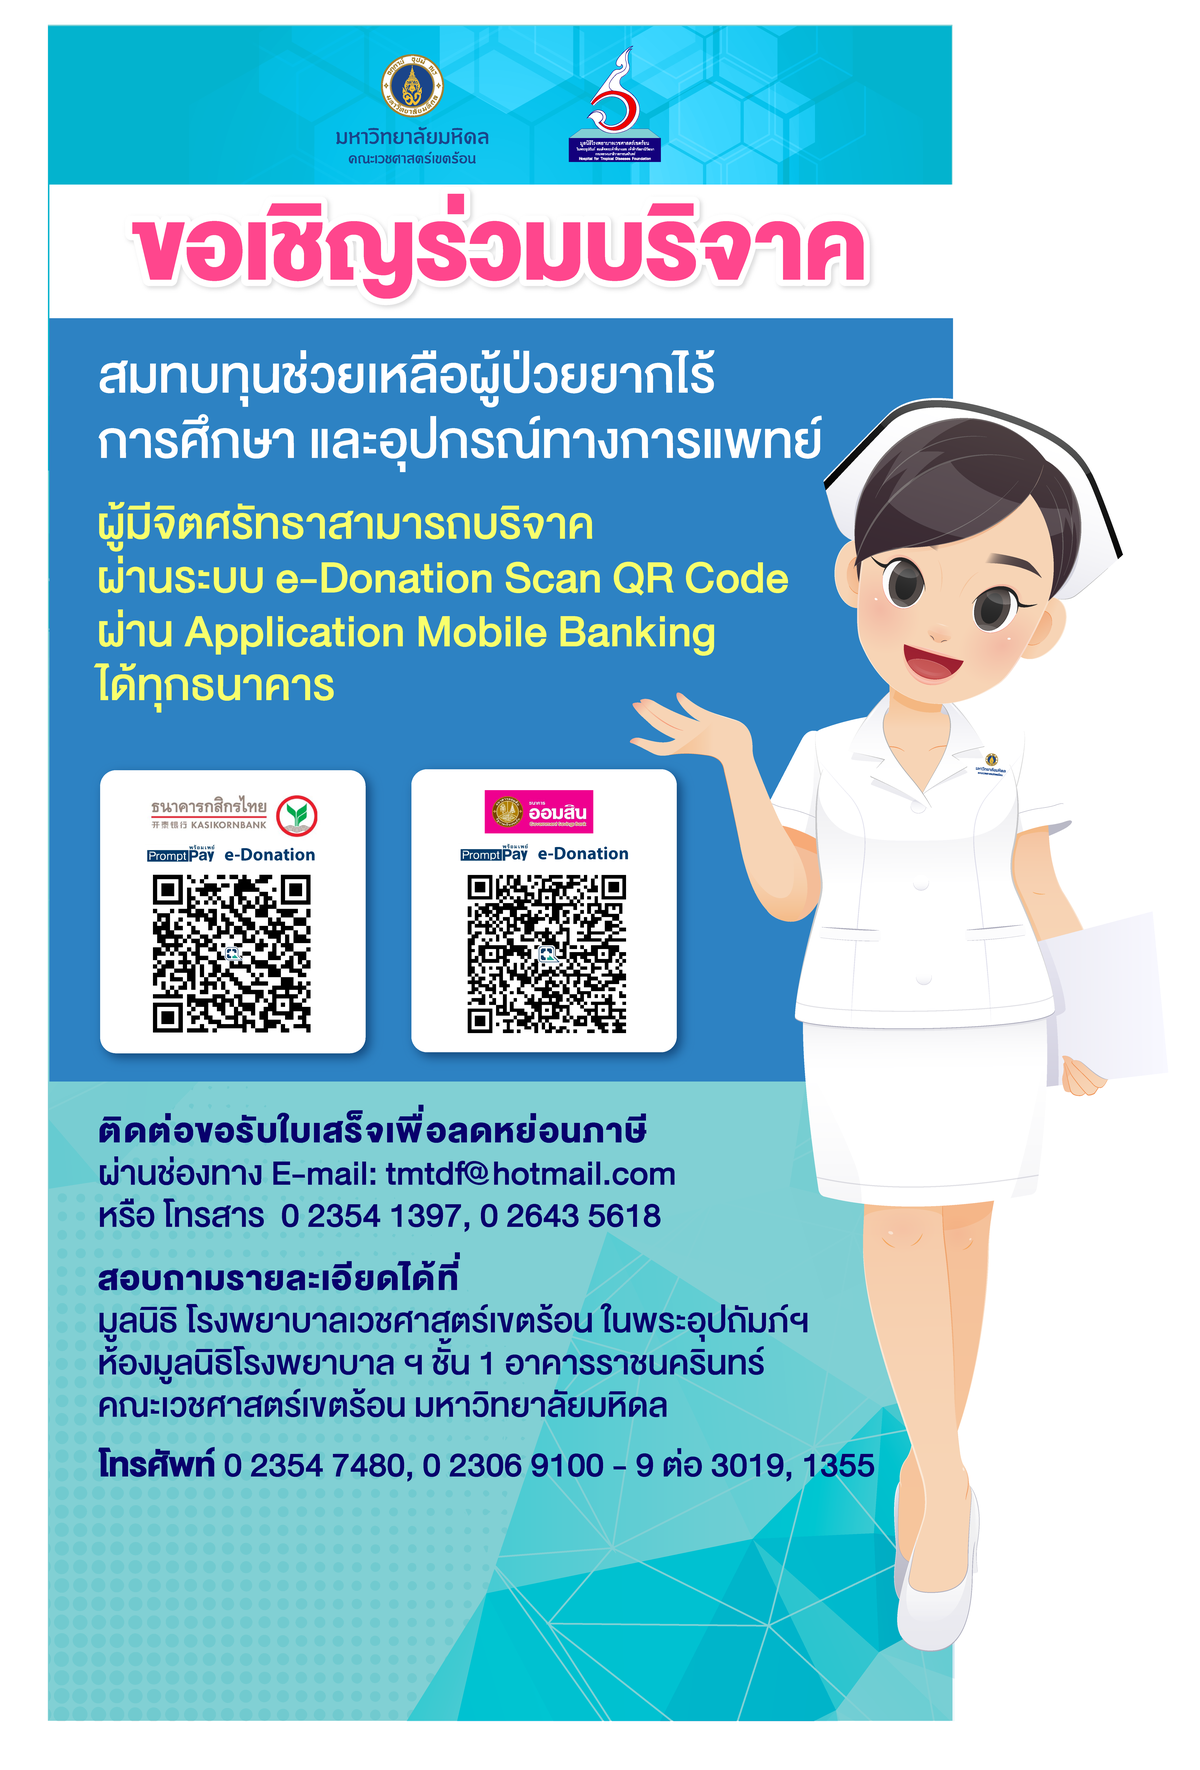 มูลนิธิโรงพยาบาลเวชศาสตร์เขตร้อน ในพระอุปถัมภ์ฯ ชวนคนไทยร่วมสมทบทุน ช่วยสนับสนุนการศึกษาและอุปกรณ์ทางการแพทย์